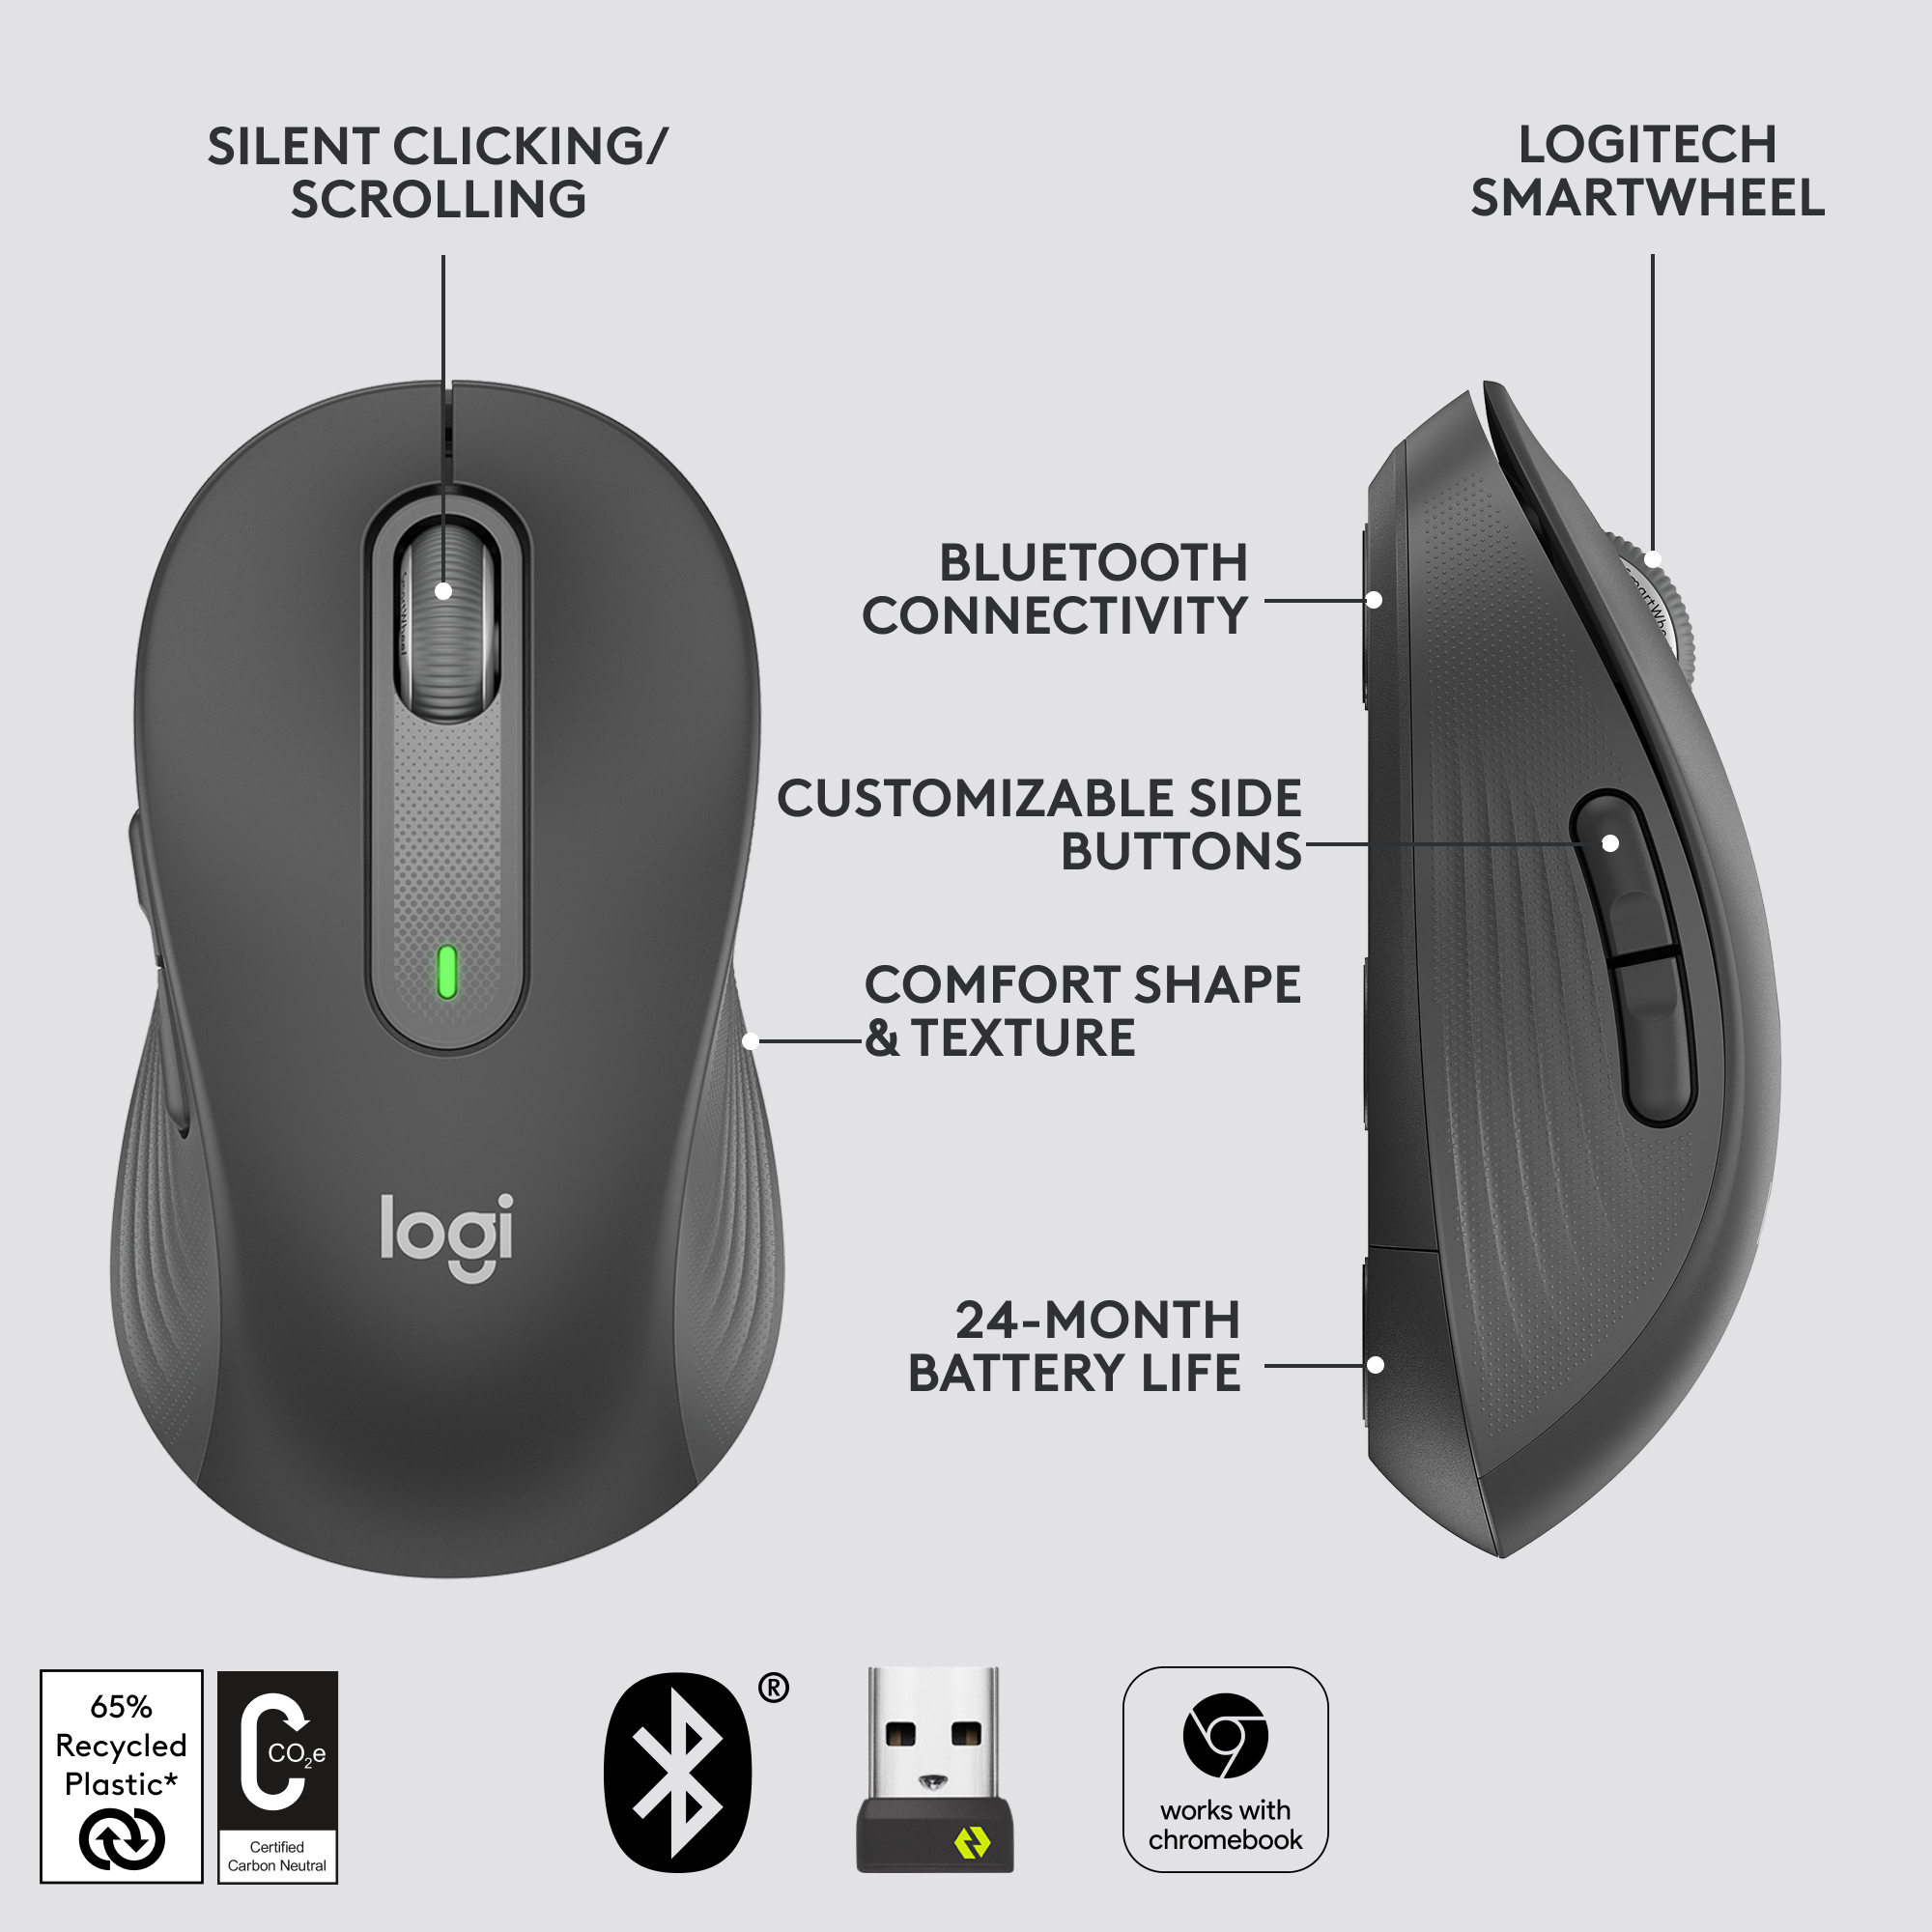 Logitech Signature M650 L cordless mouse for Leftie, southpaw